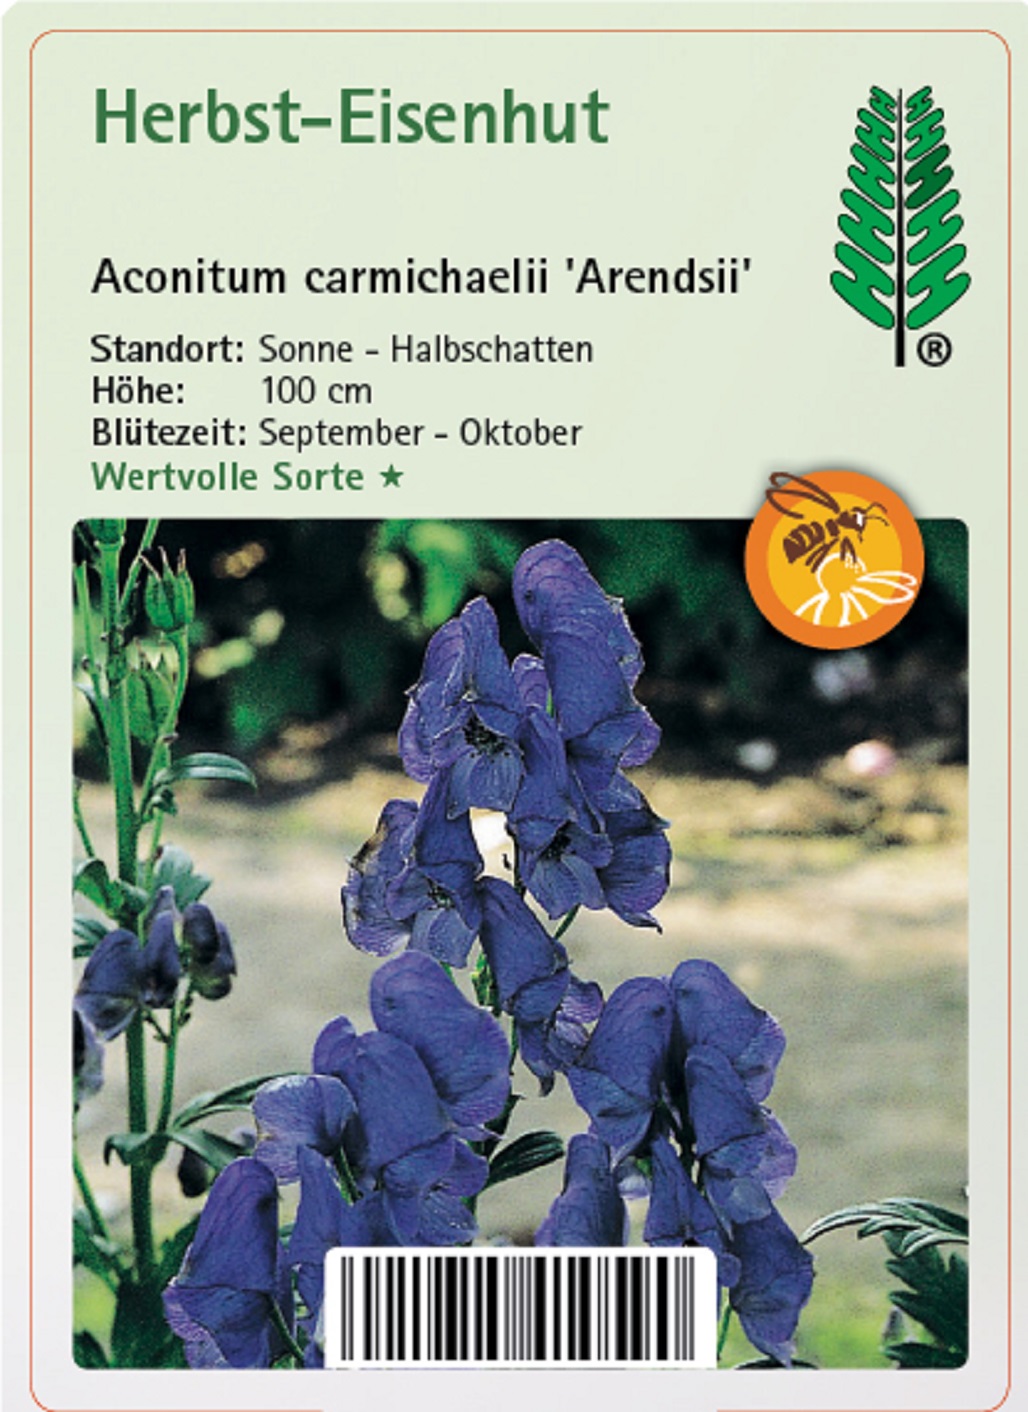 Herbst-Eisenhut - Aconitum carmichaelii 'Arendsii', 11cm Topf